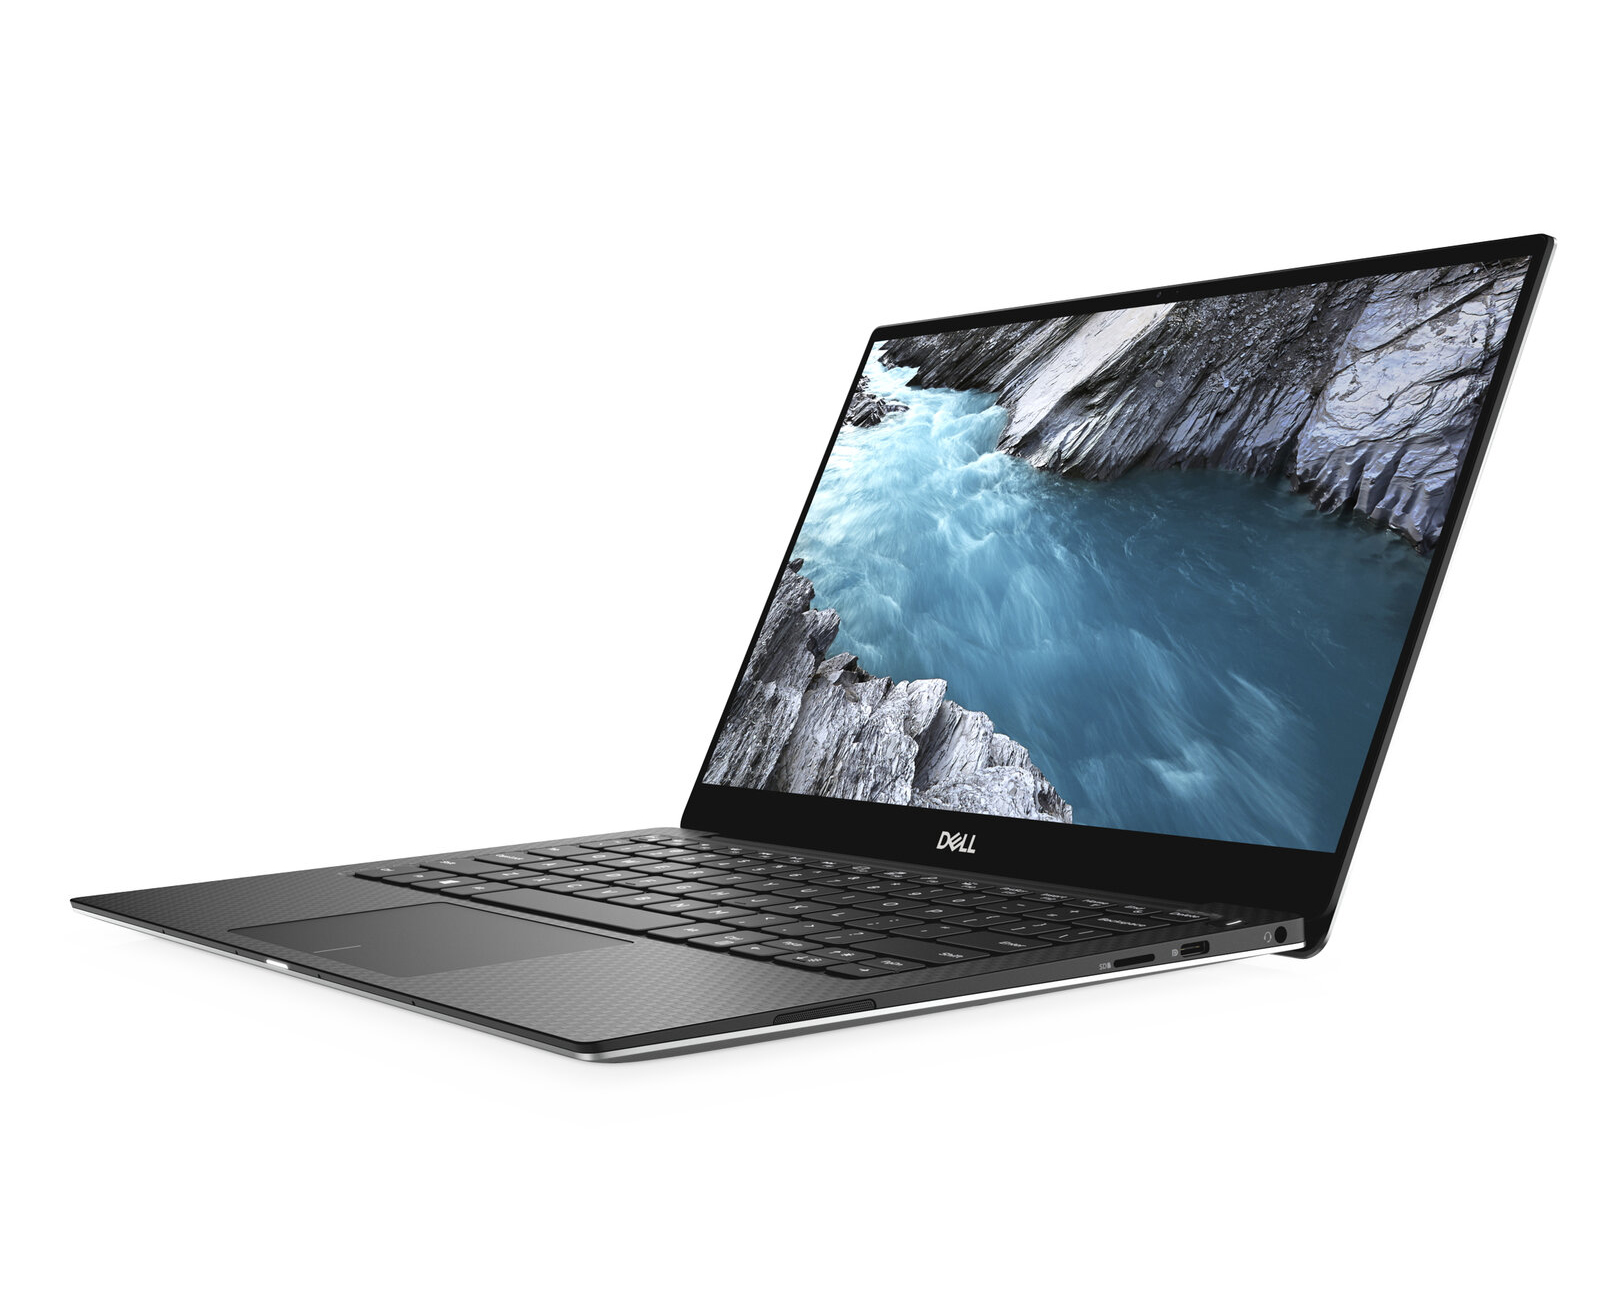 Dell XPS 13 9380 2019 - Notebookcheck.net External Reviews